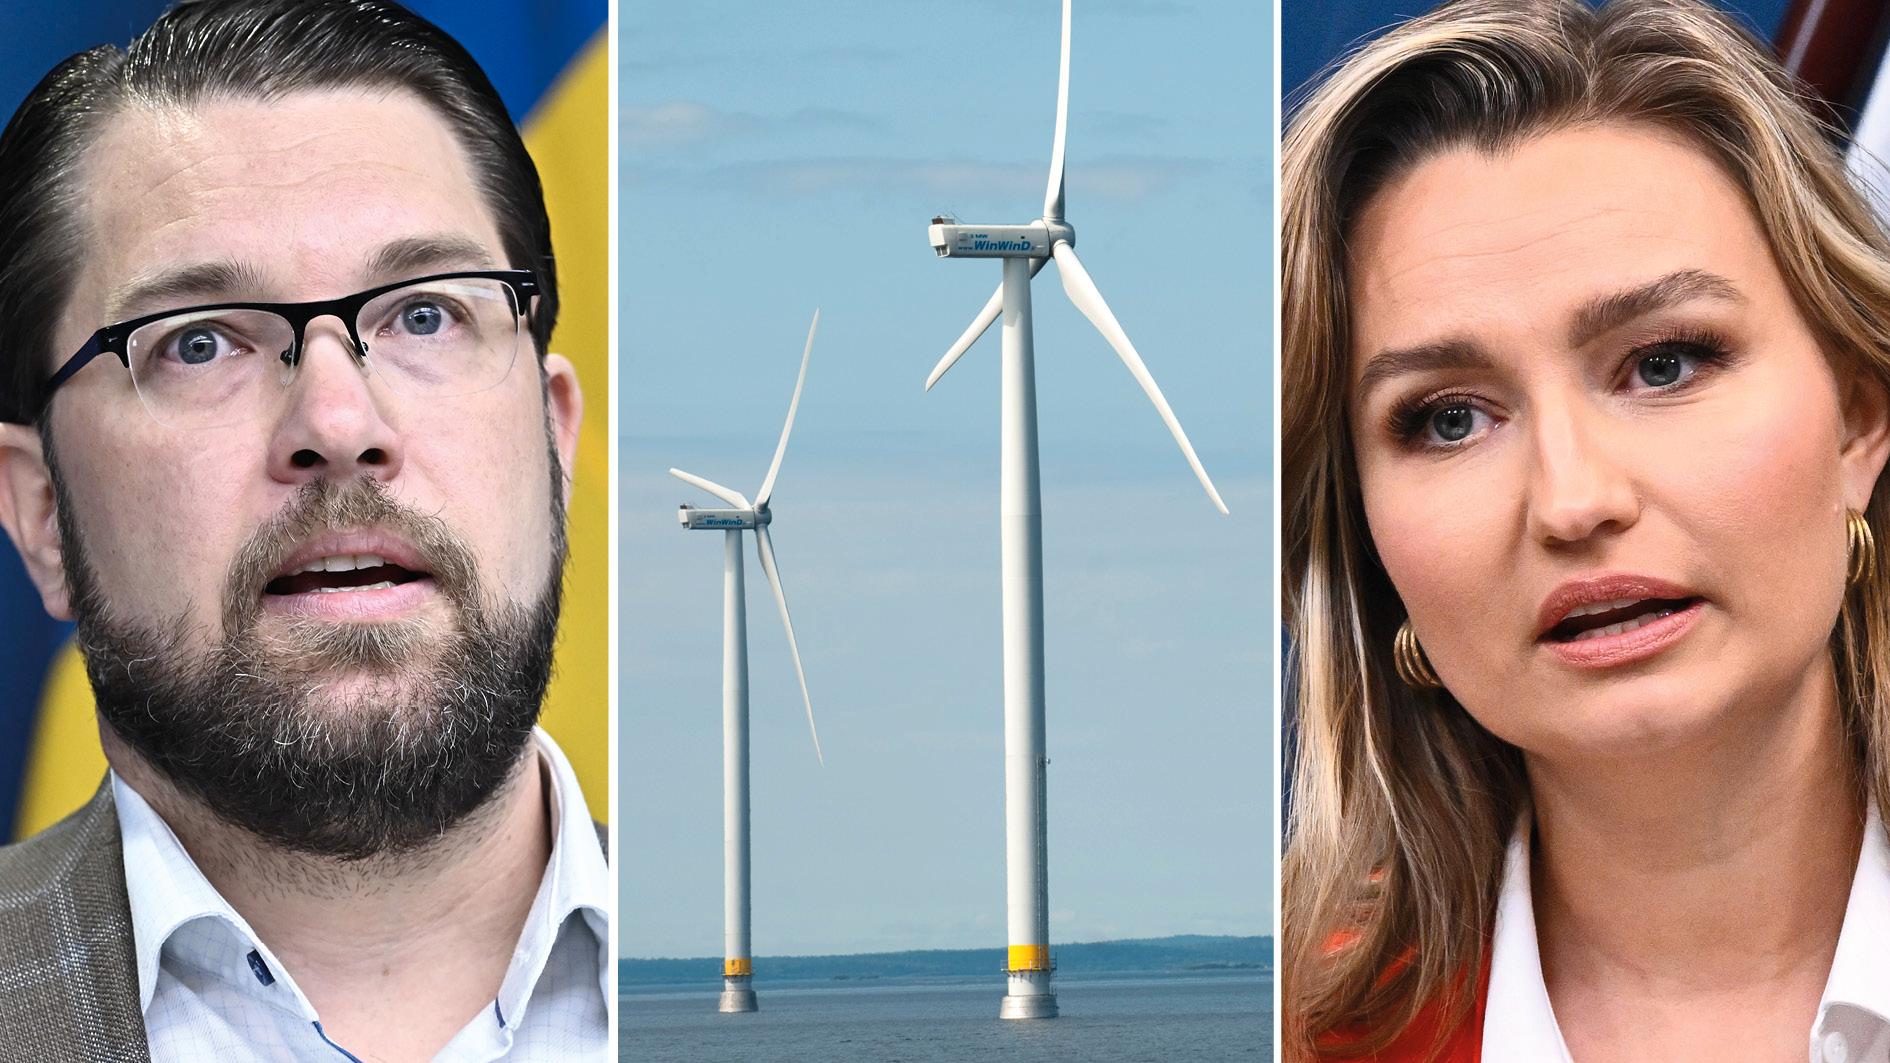 Regeringen måste lägga om sin politik kring vindkraften för att slippa gå till historien som den som saboterade elektrifieringen, nyindustrialiseringen och klimatomställningen, skriver fem forskare i energisystem och nationalekonomi.